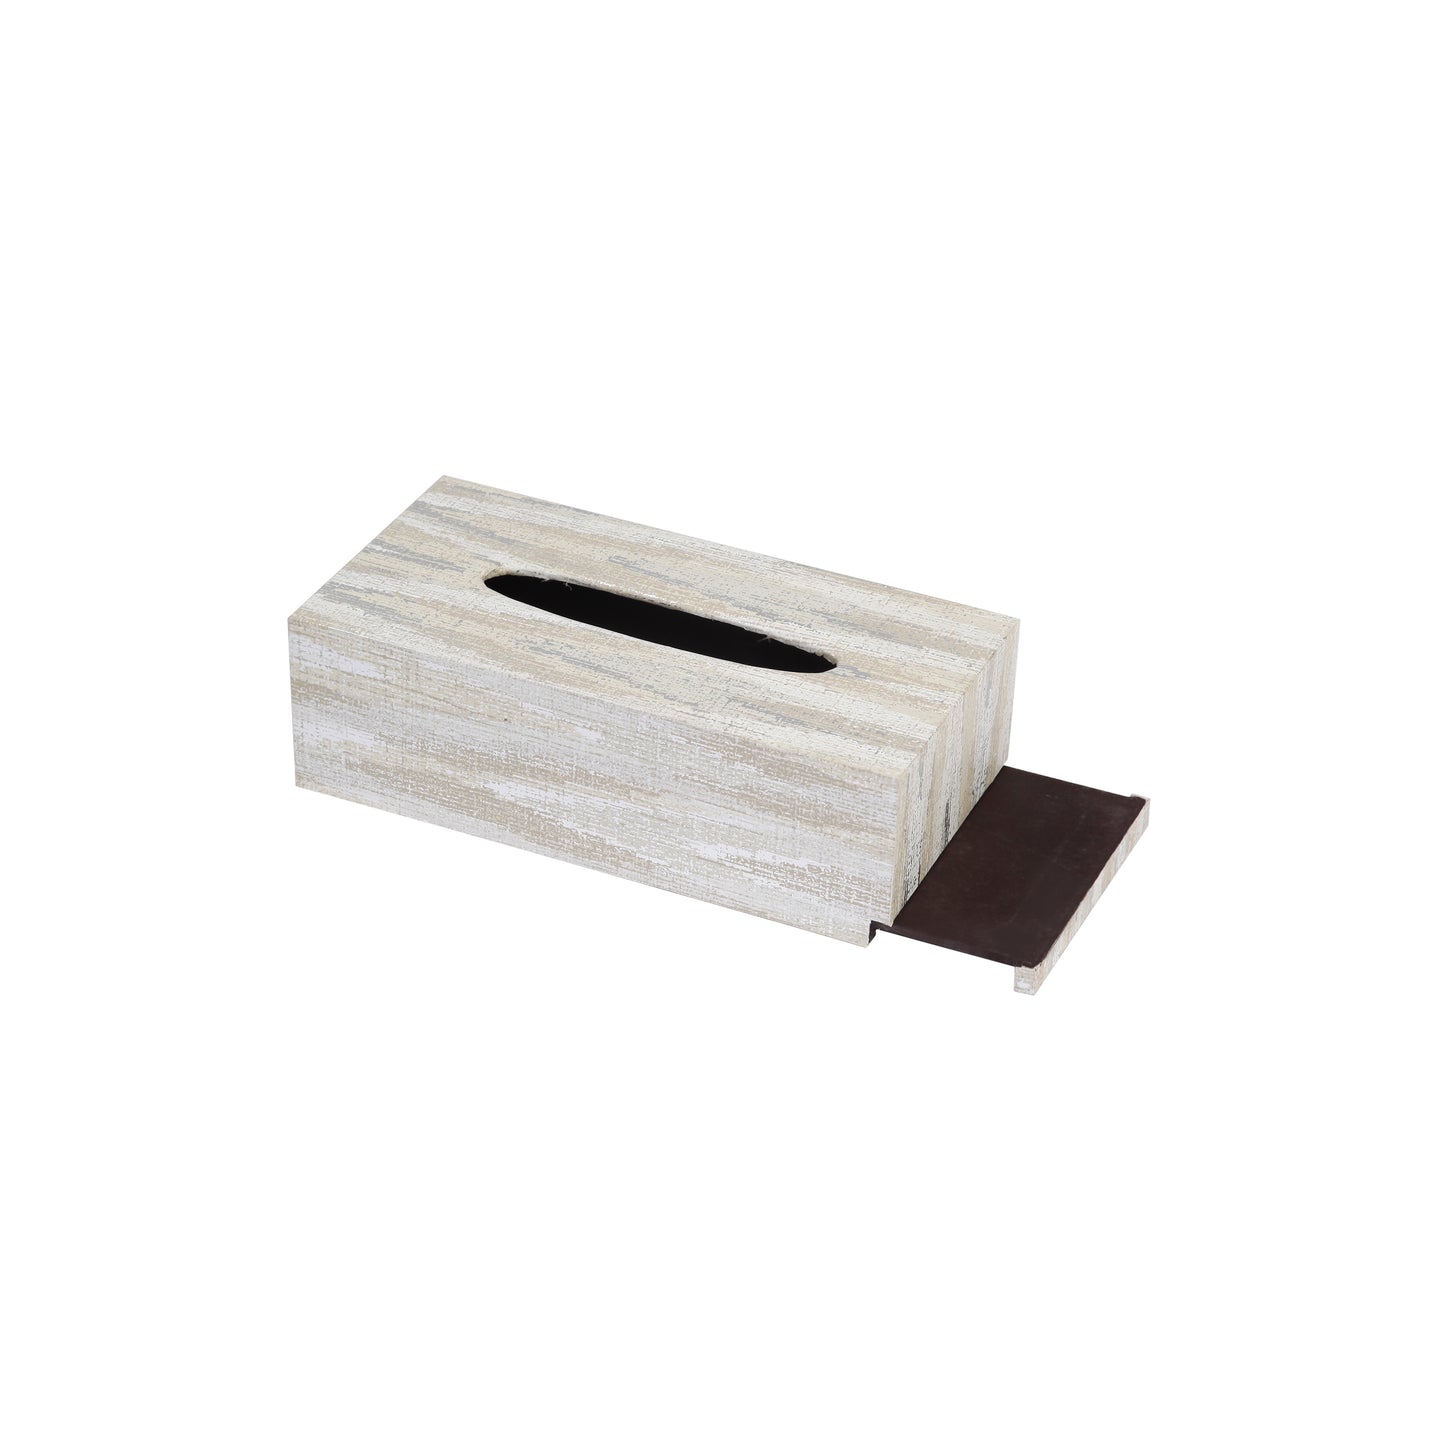 A Tiny Mistake Metallic Chevron Rectangle Tissue Box, 26 x 13 x 8 cm